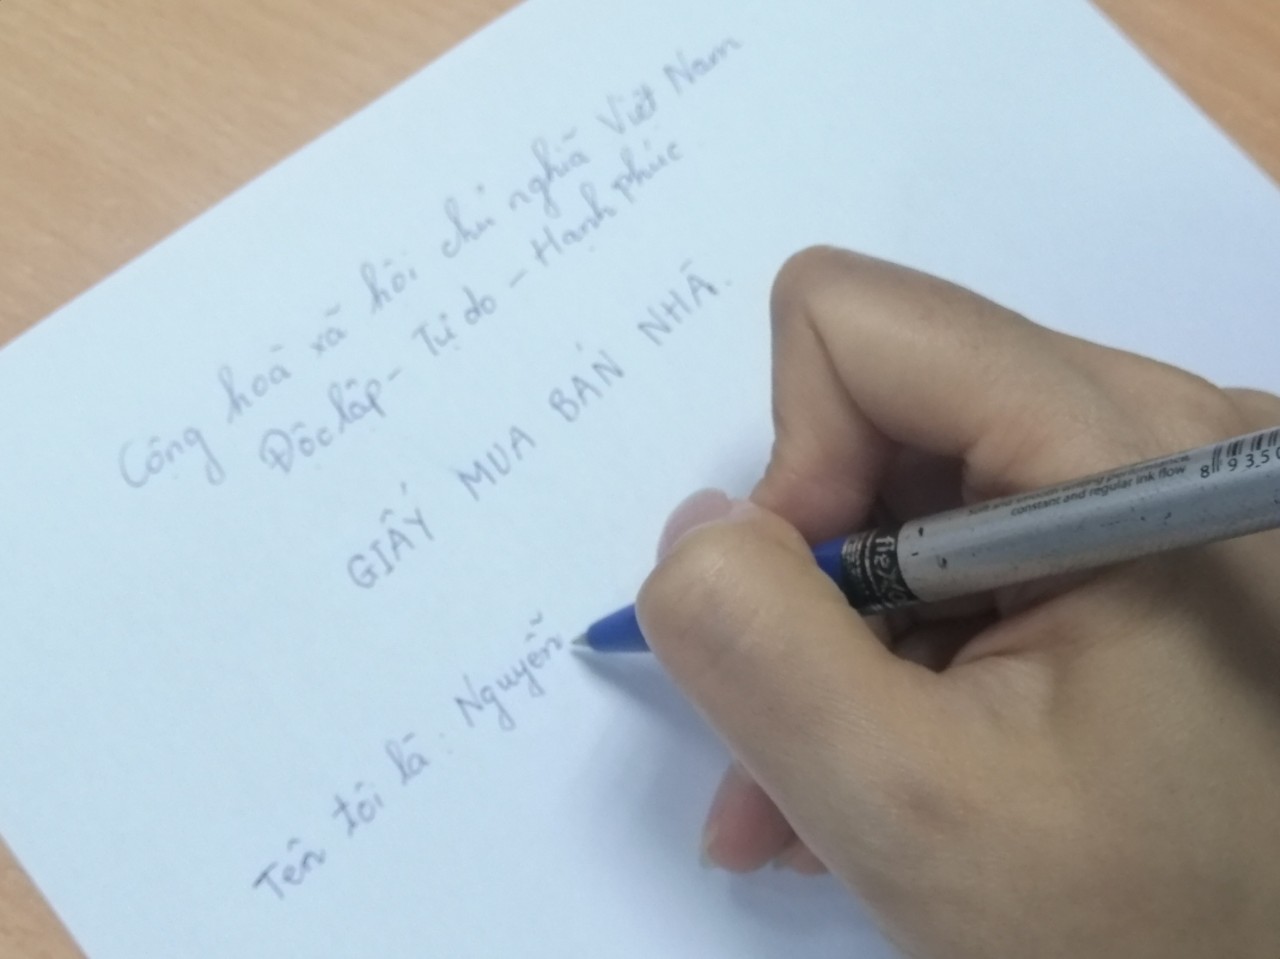 Các giao dịch tồn tại nhiều rủi ro thông qua hình thức viết tay